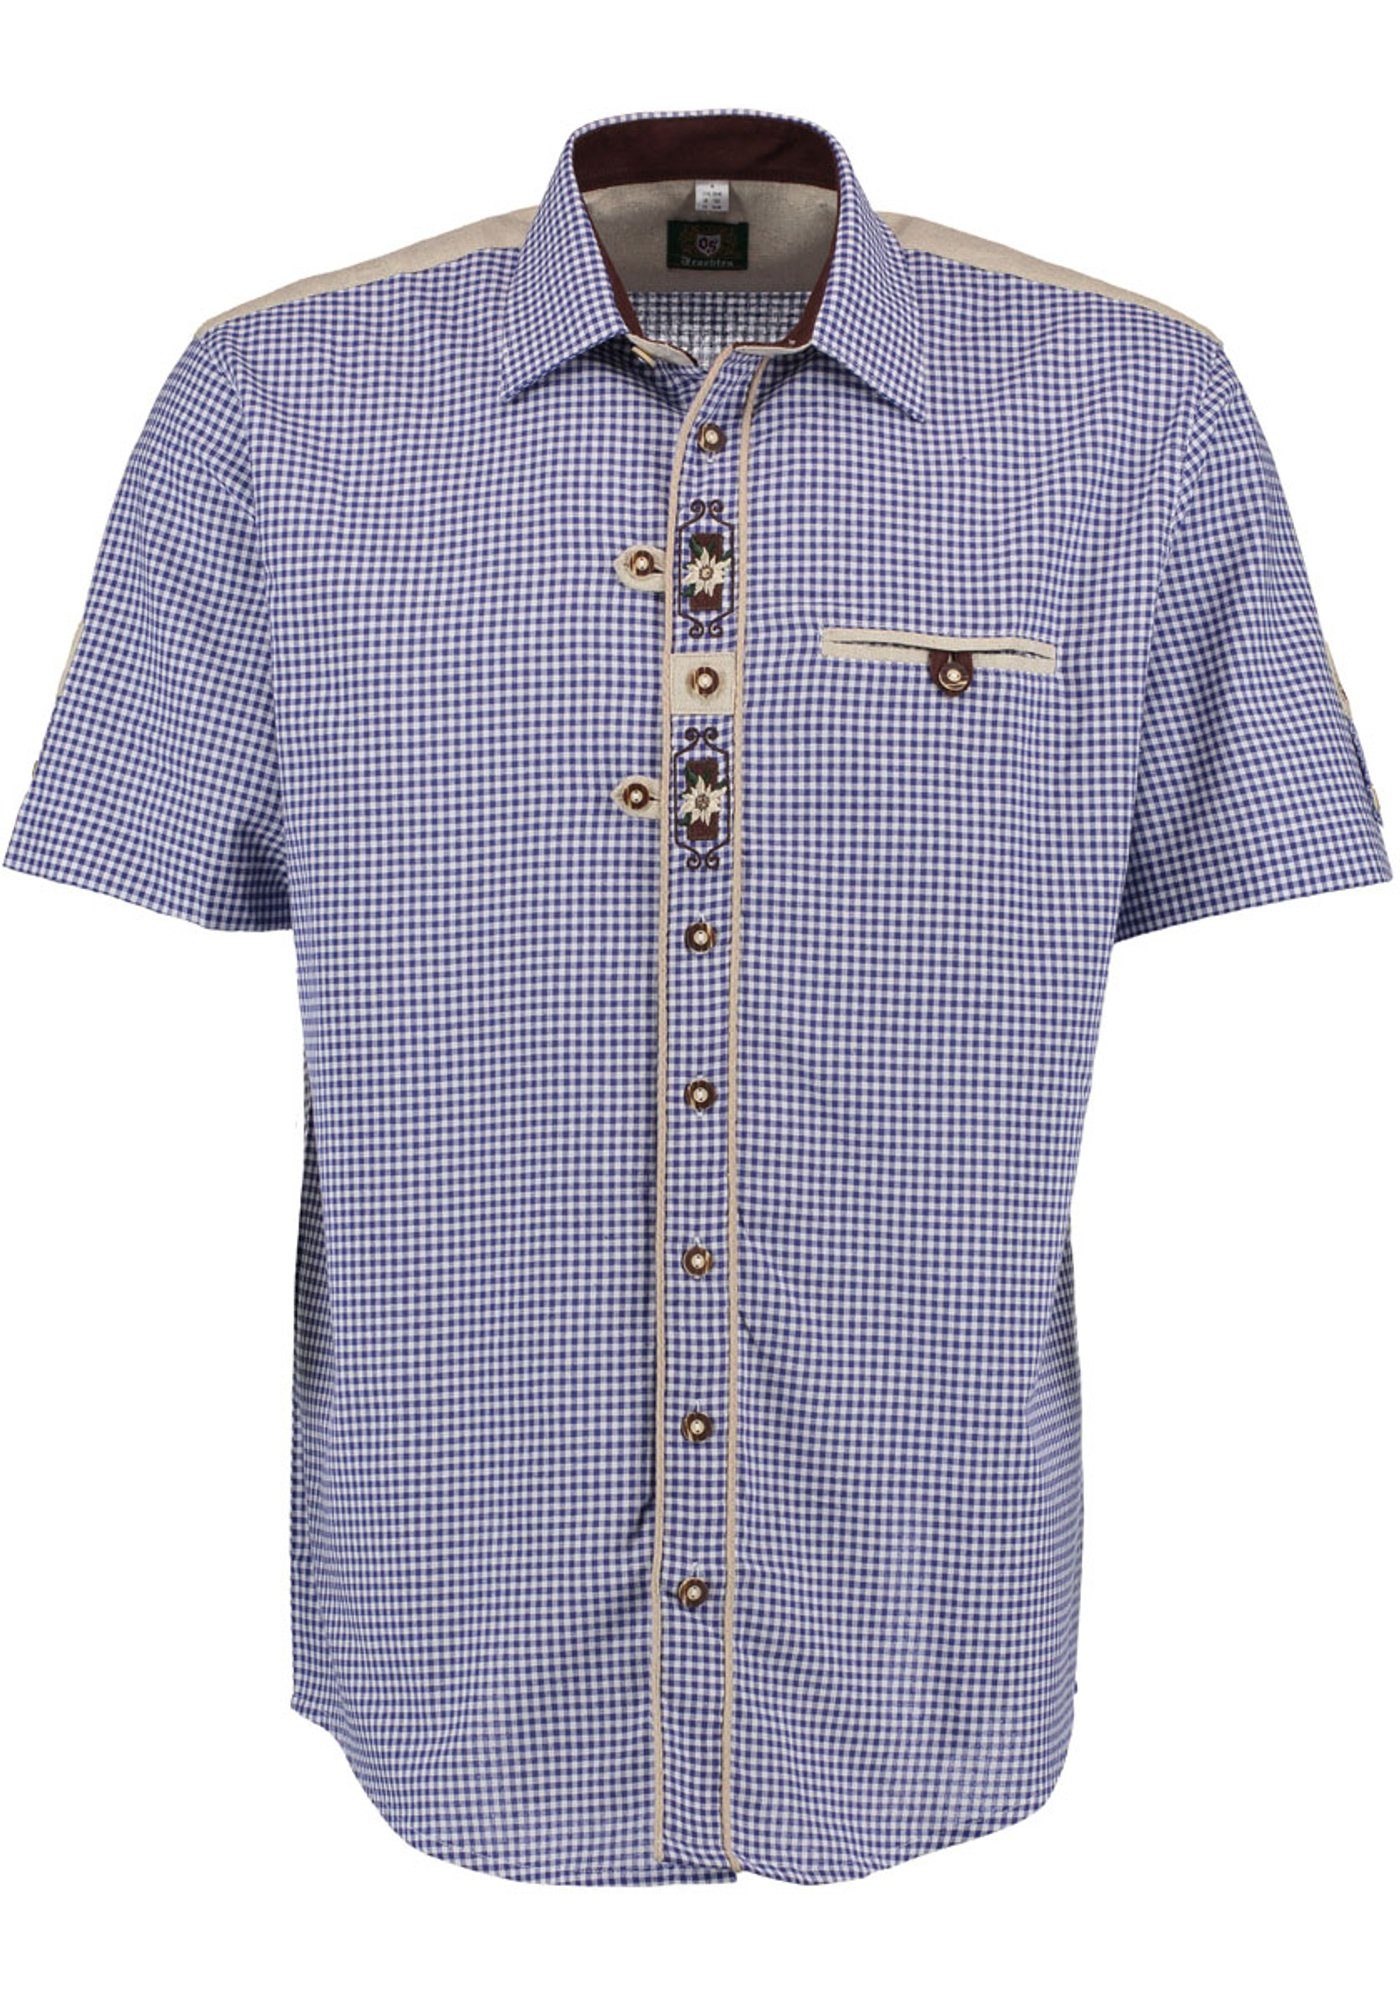 Gajesa Knopfleiste Trachtenhemd der Kurzarmhemd Edelweiß-Stickerei auf mit kornblau OS-Trachten